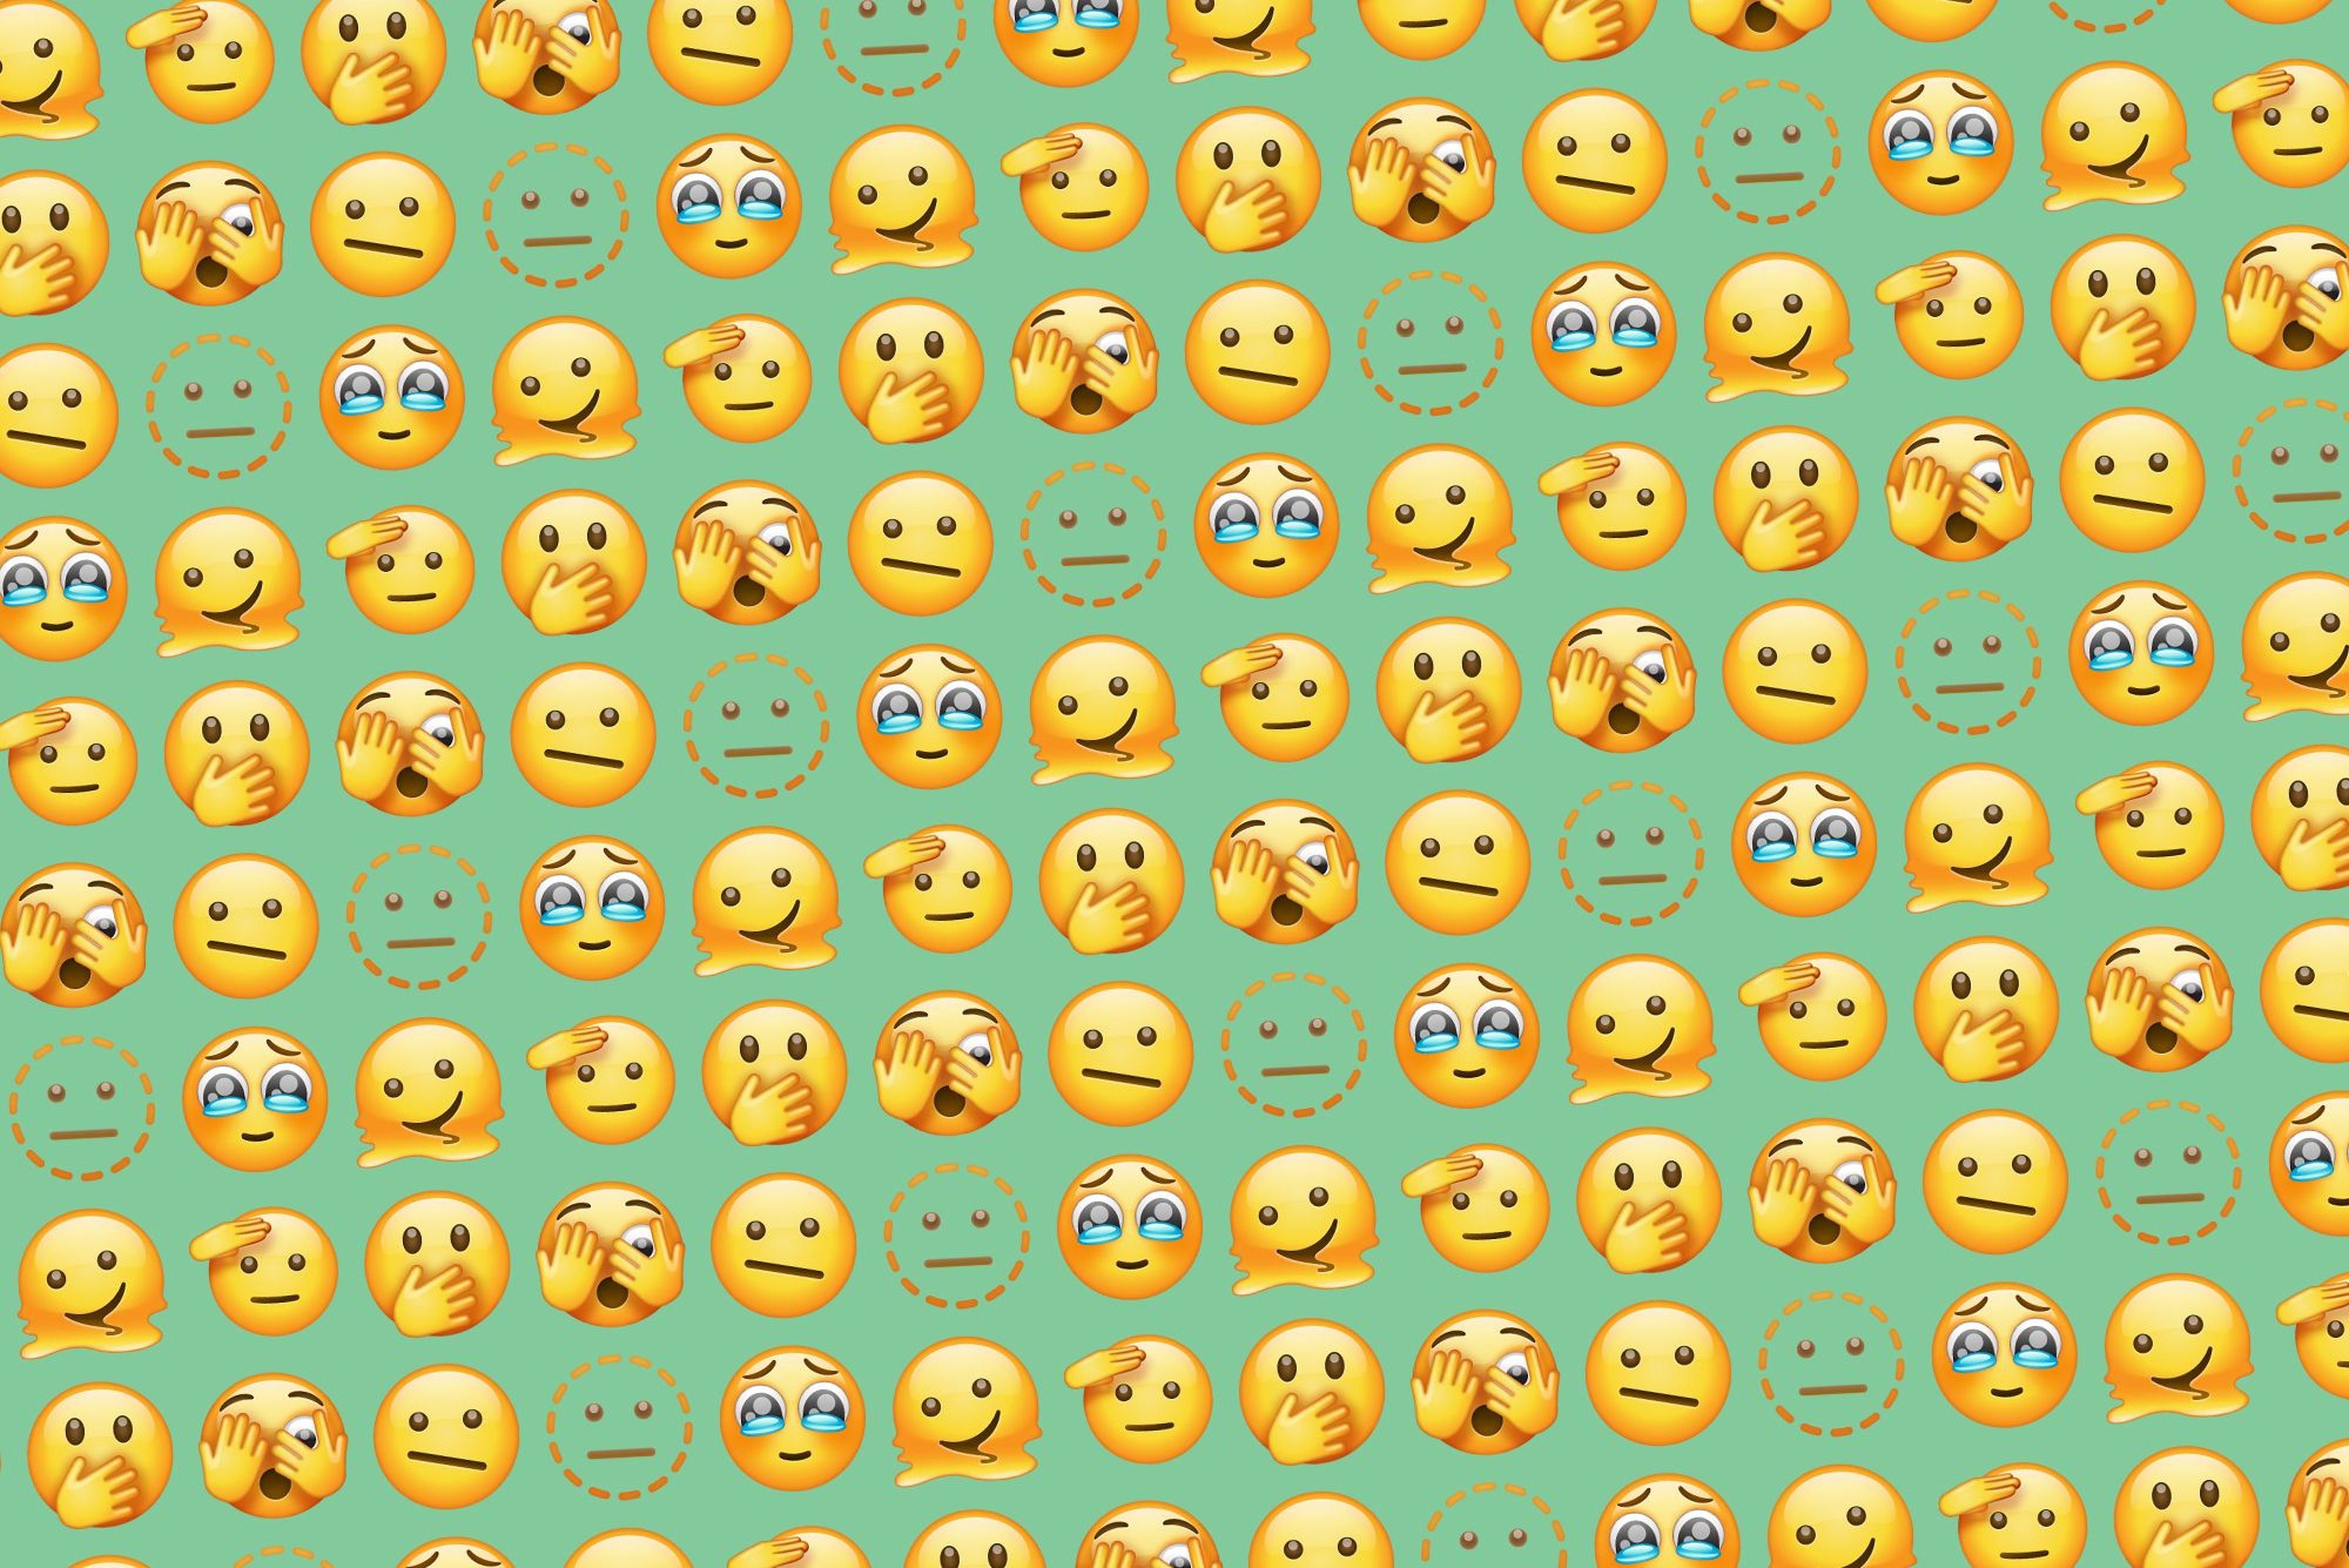 Los 107 emojis nuevos que llegan a WhatsApp, a cada cual más sorprendente